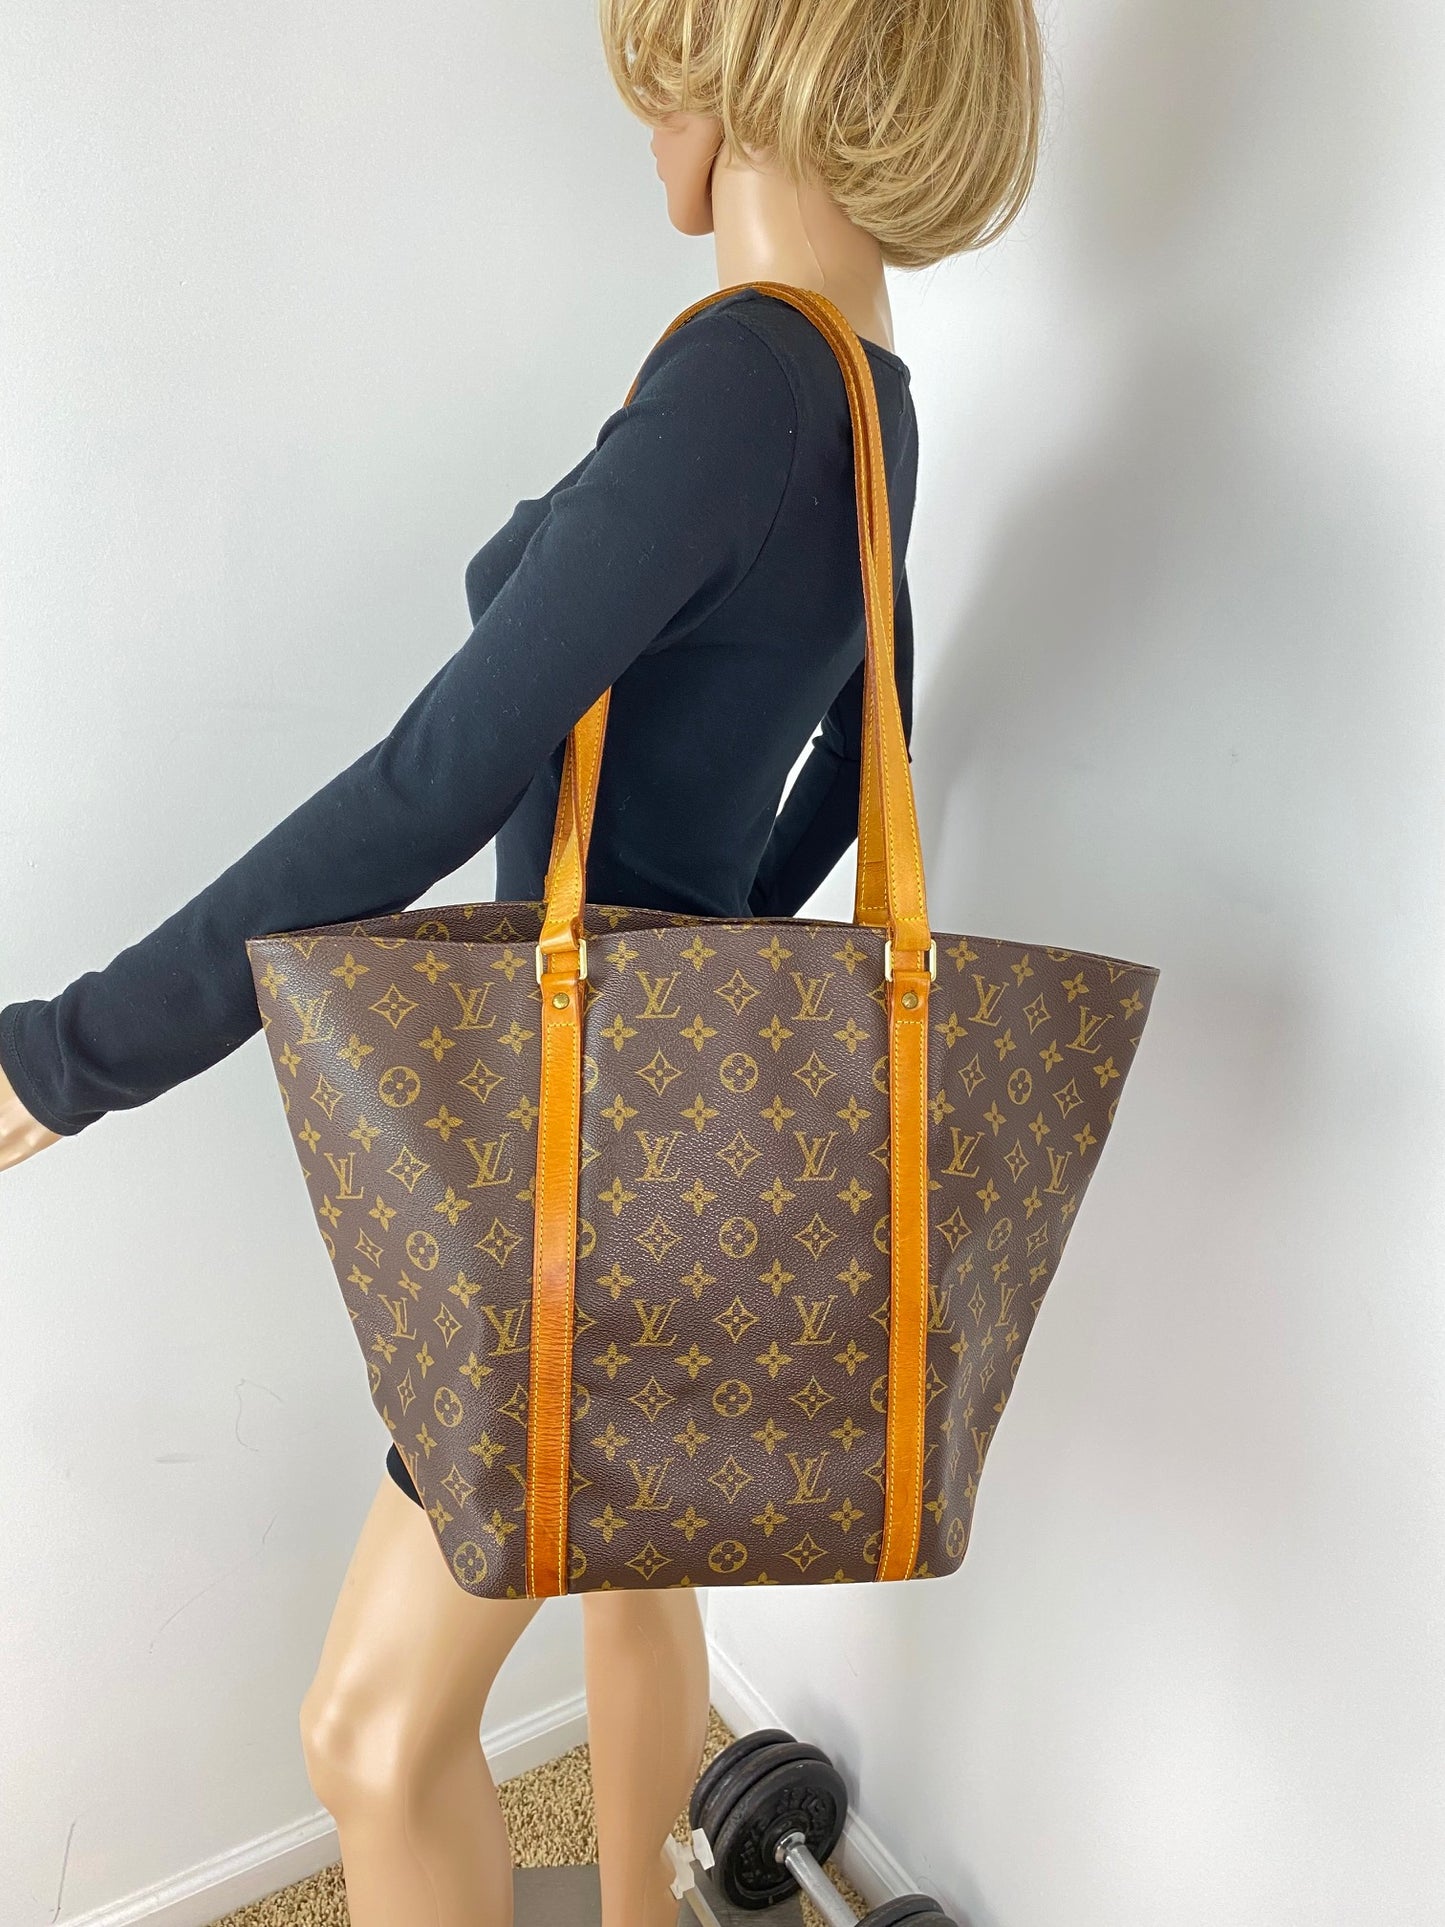 LV Bag Insert Lv Palermo Gm Insert for Louis Vuitton Bag 